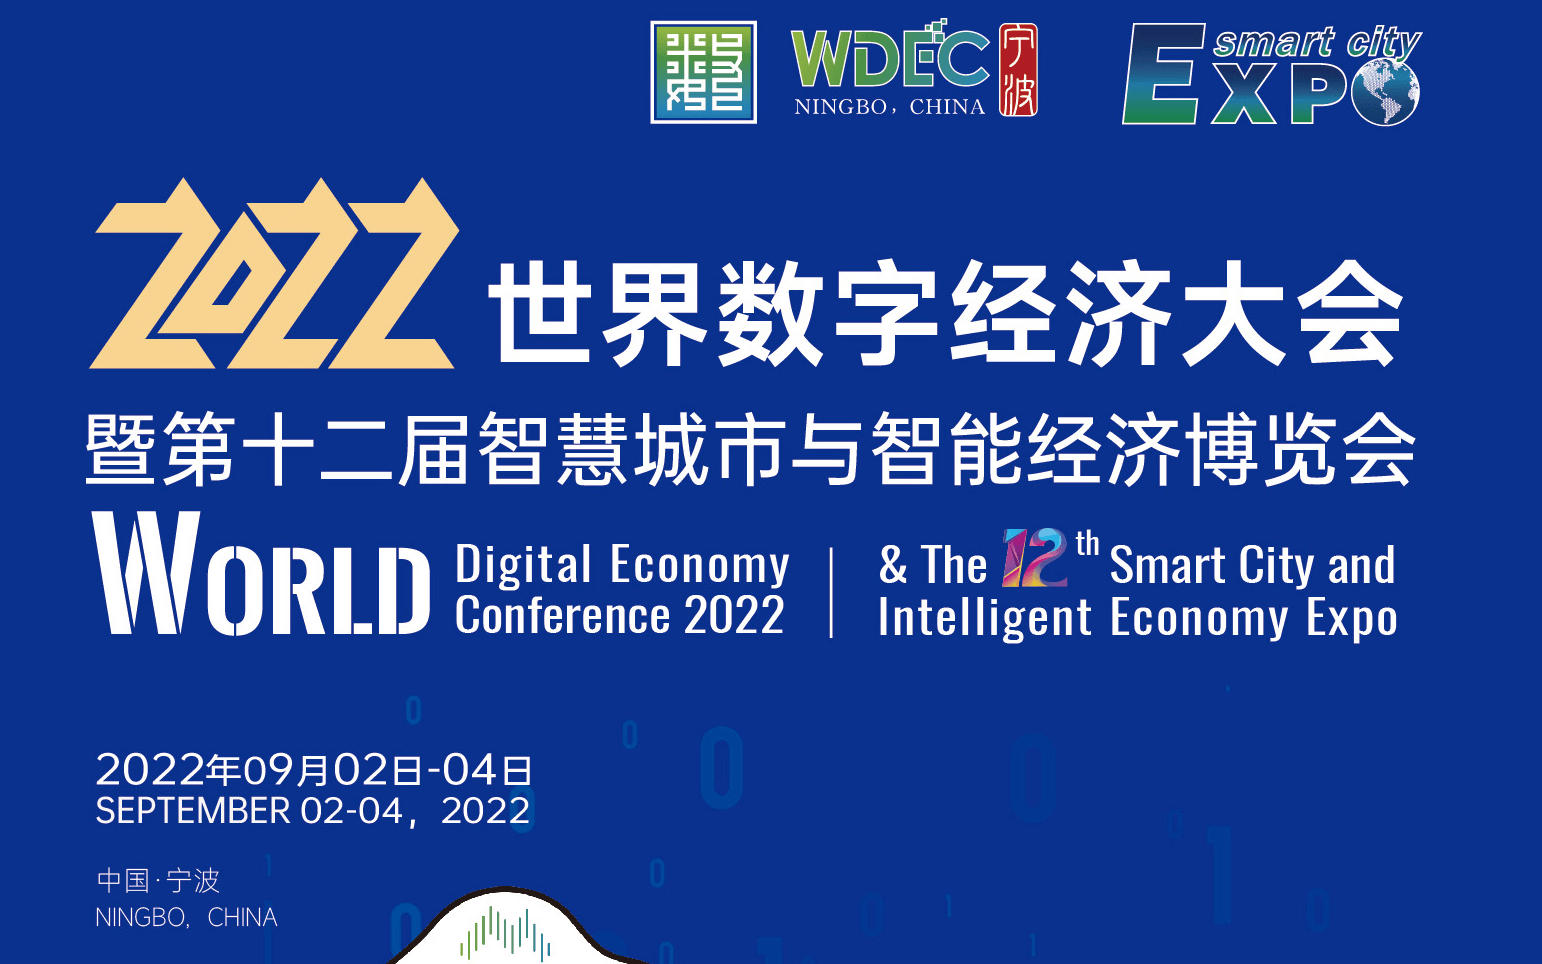 2022世界数字经济大会 暨第十二届智慧城市与智能经济博览会